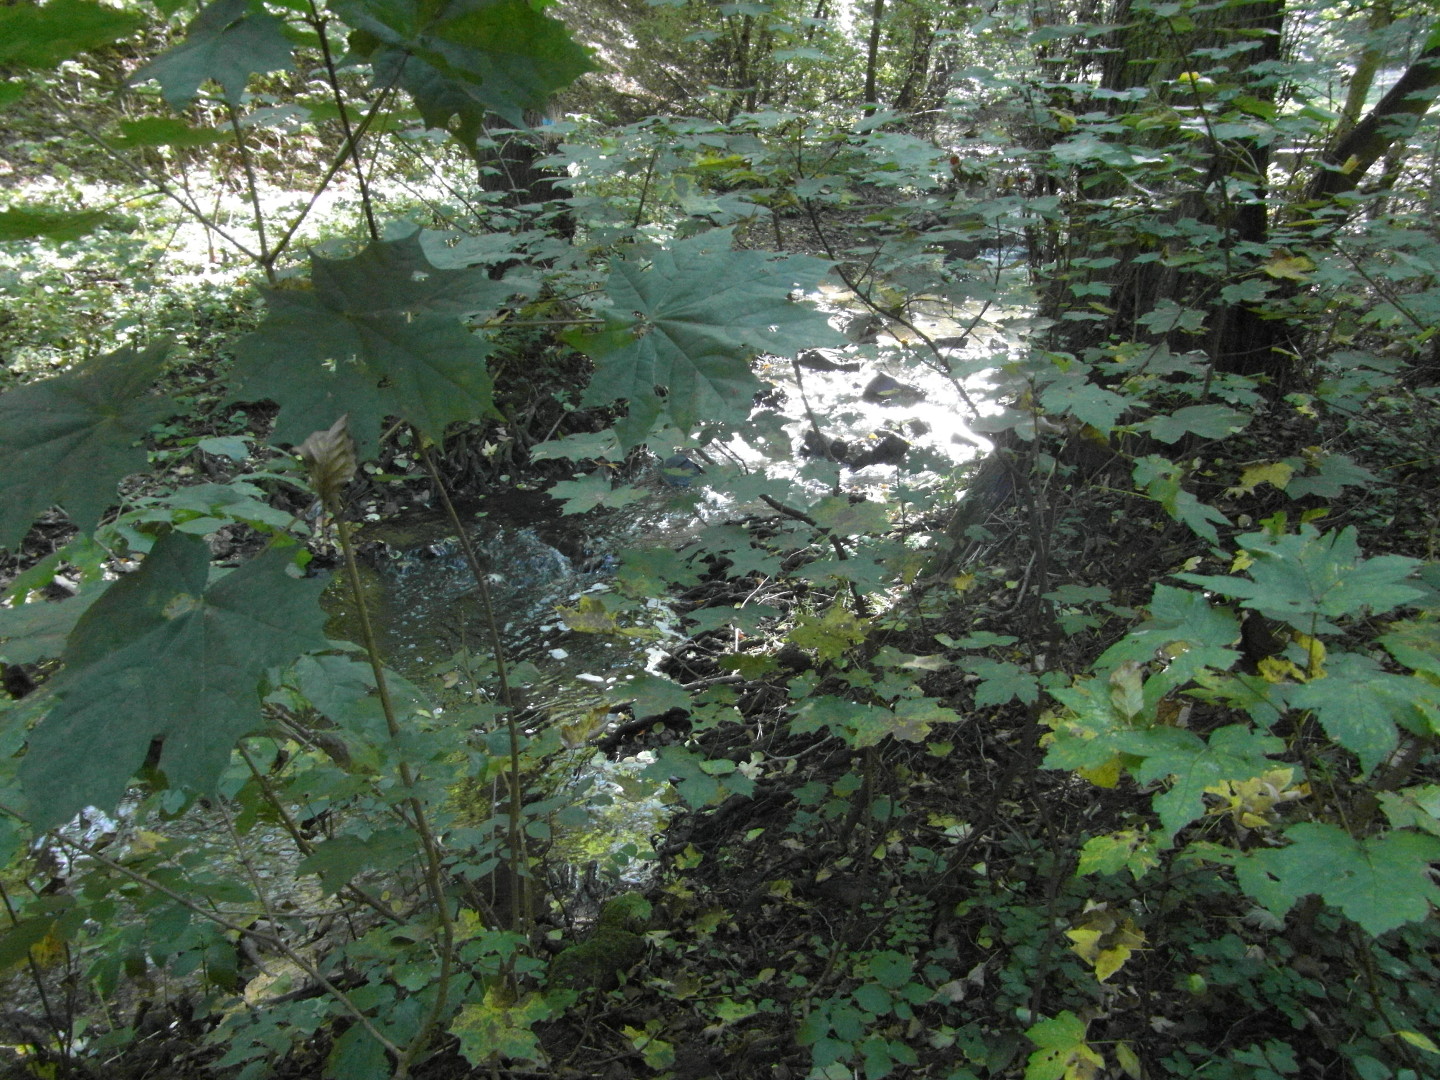 Na fotografii z vletu je vidt odlesk svtla na hladin potoka v hust sti lesa.
  V zbru snmku jsou v poped listy javoru.